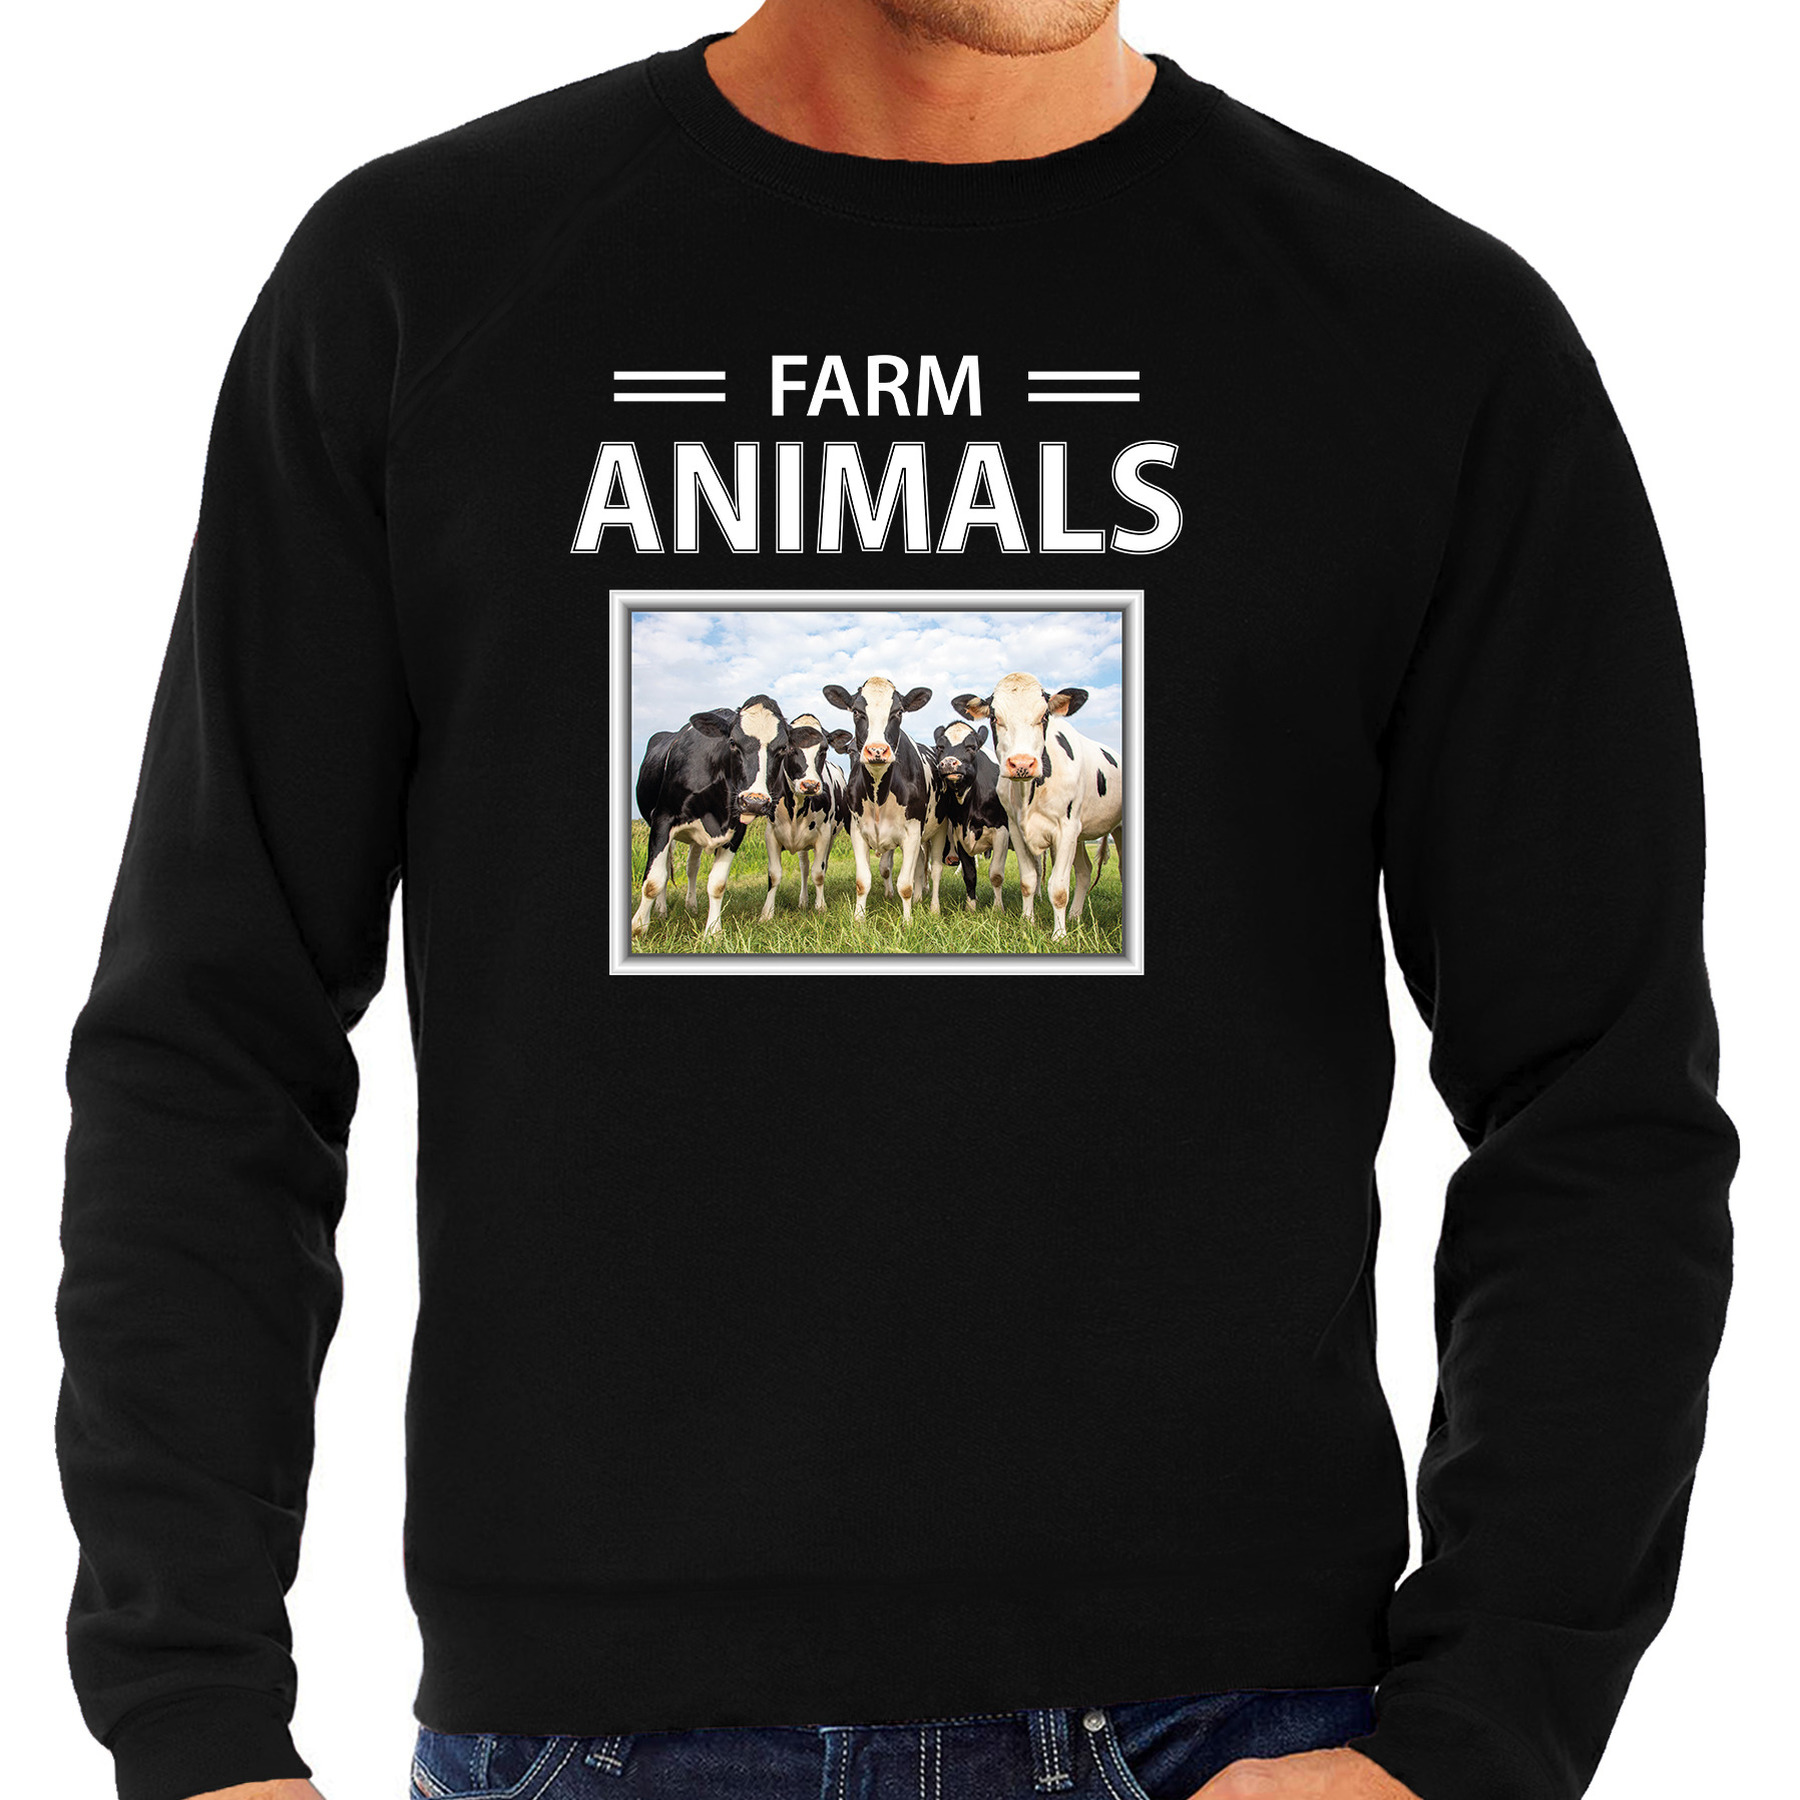 Kudde koeien sweater-trui met dieren foto farm animals zwart voor heren